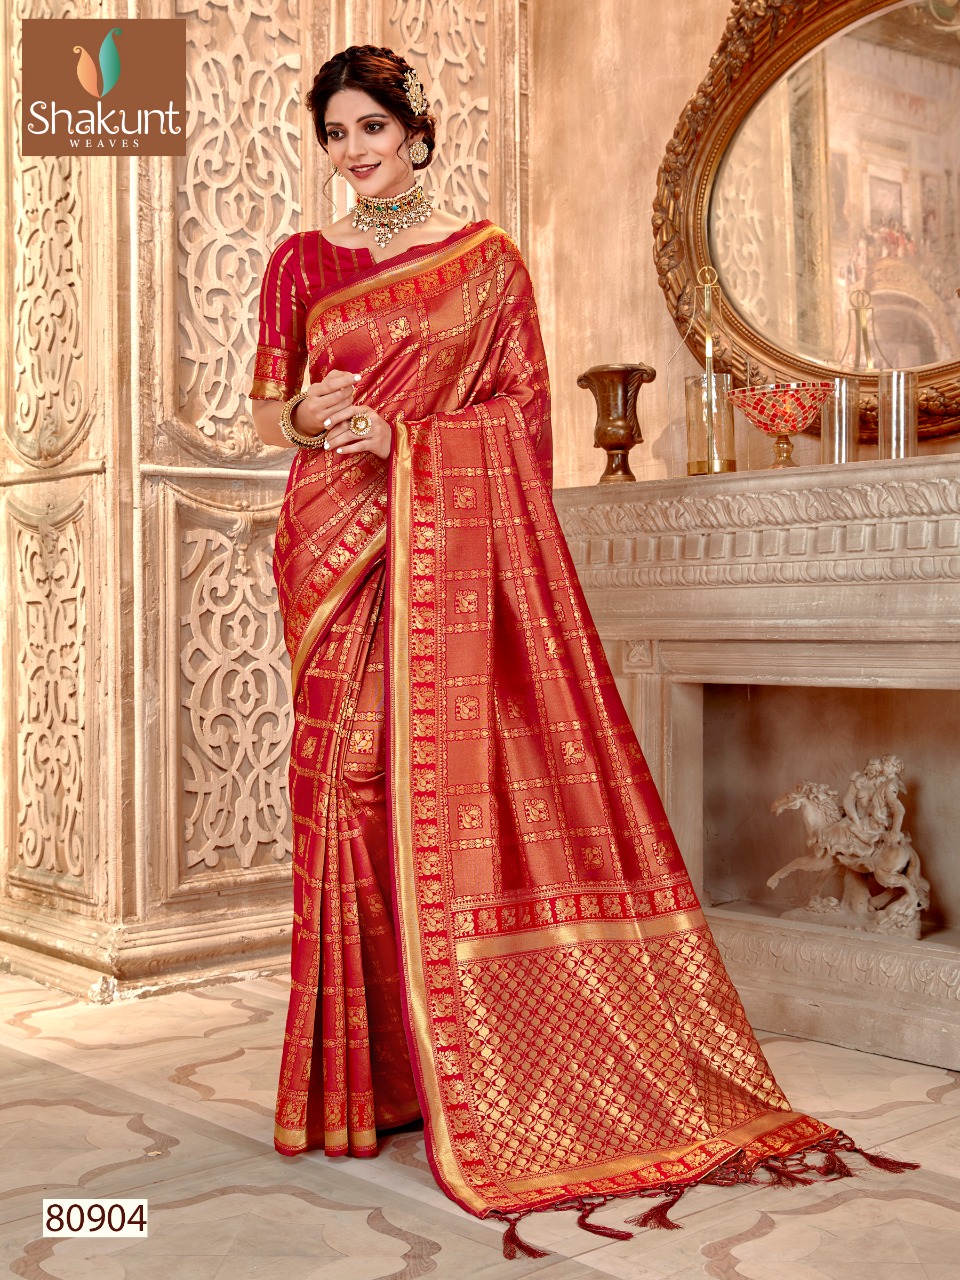 Shakunt weaves alaknanda astonishing style beautifully designed sarees